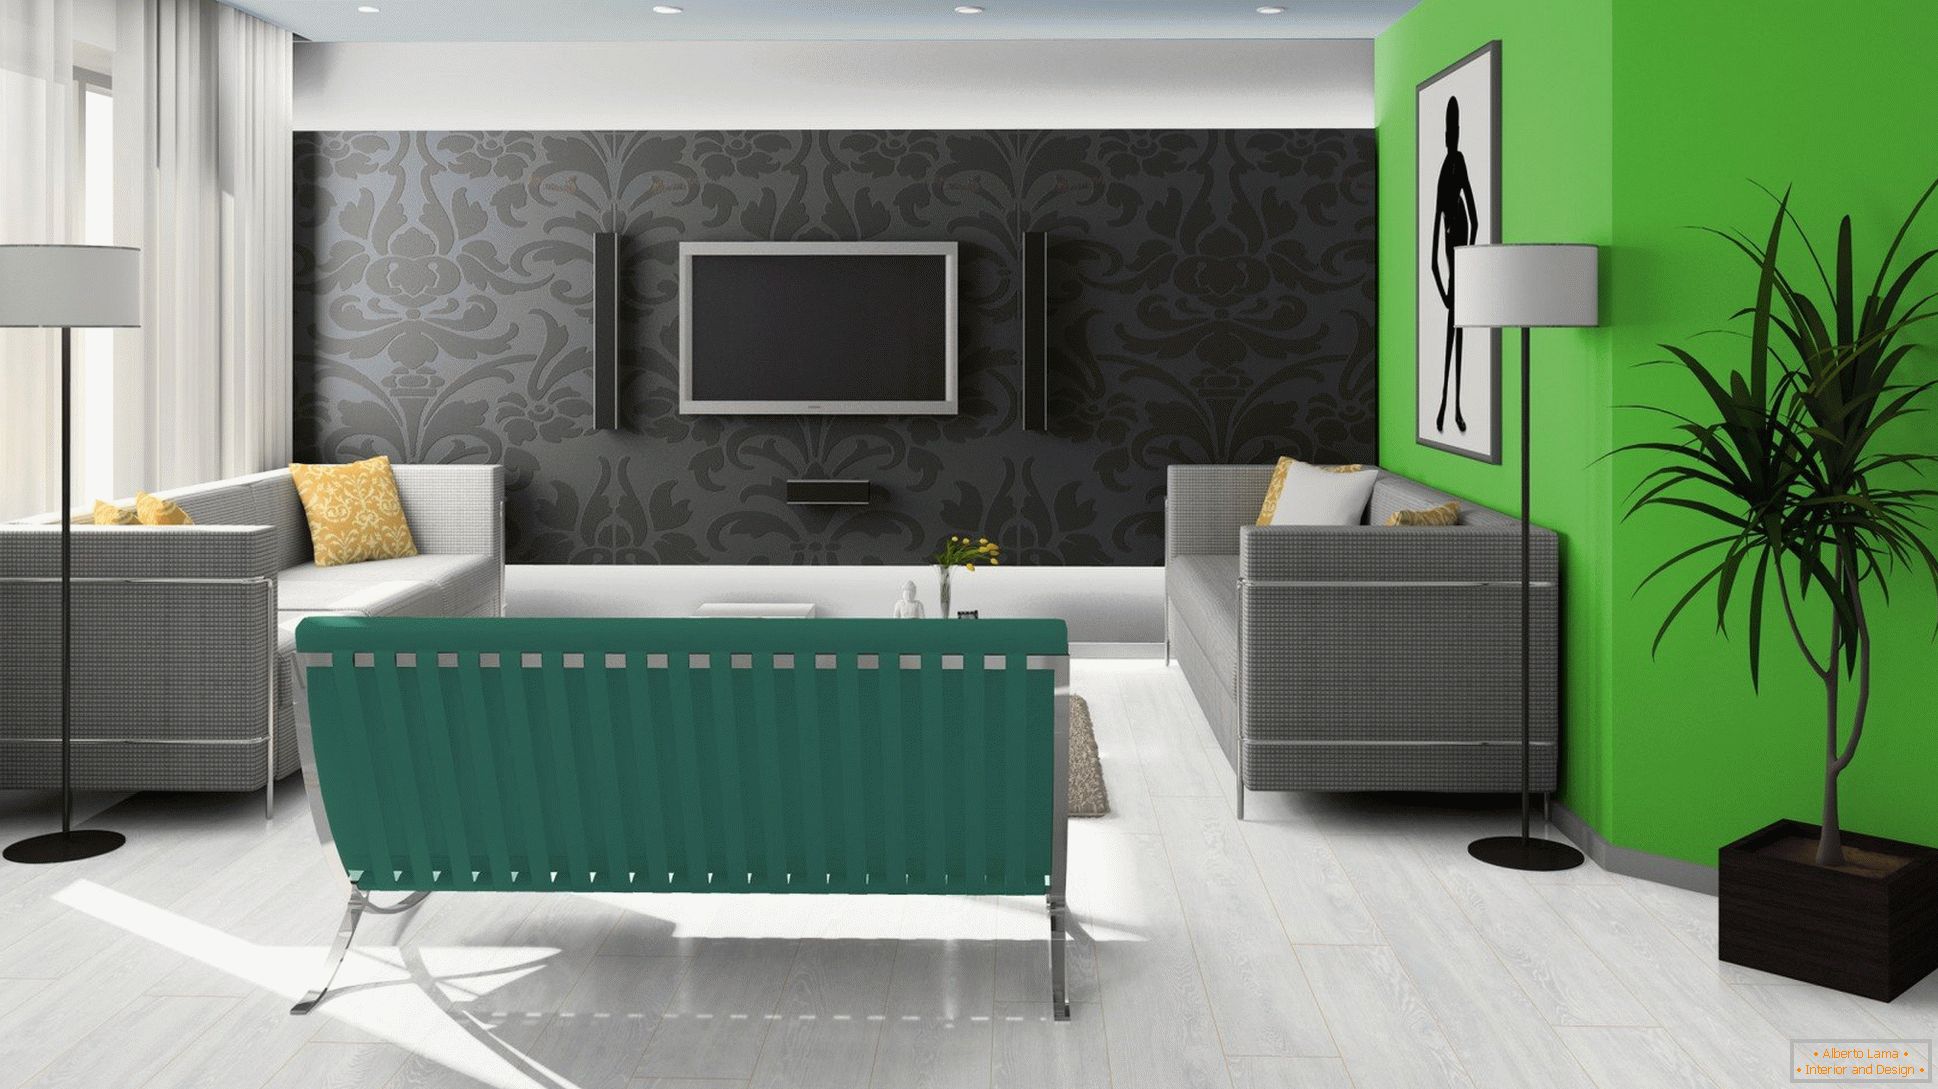 Црна, зелена и бела боја во дизајнот на дневната соба